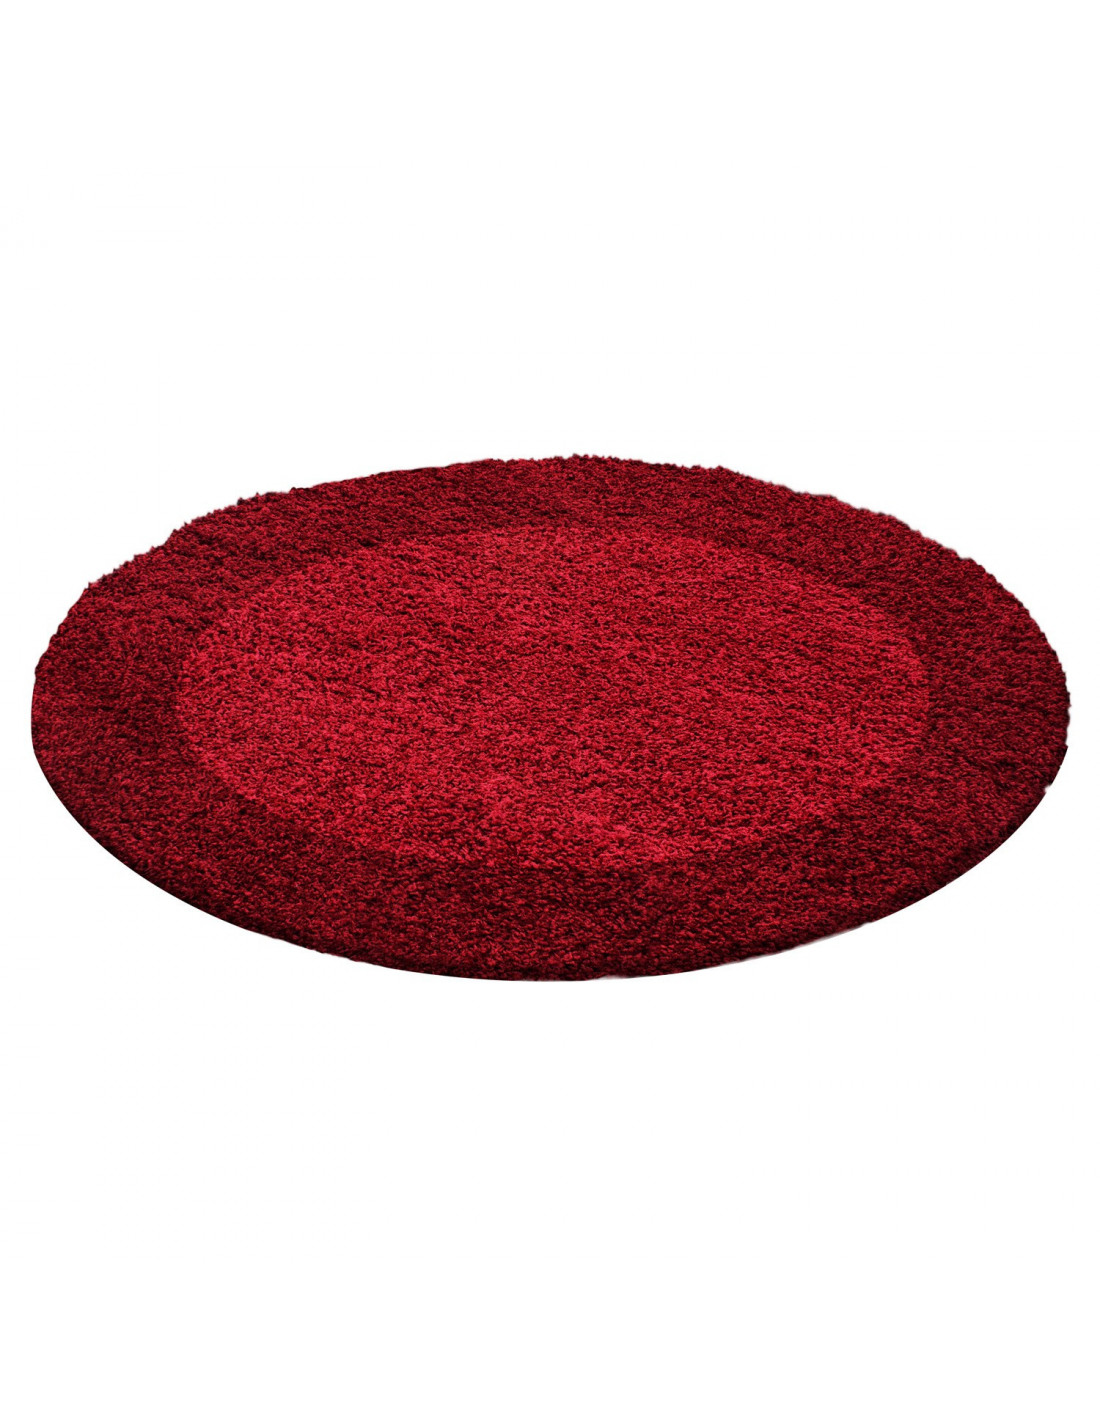 Shaggy Carpet Shaggy Carpet 2 Colors Red and Bordeaux